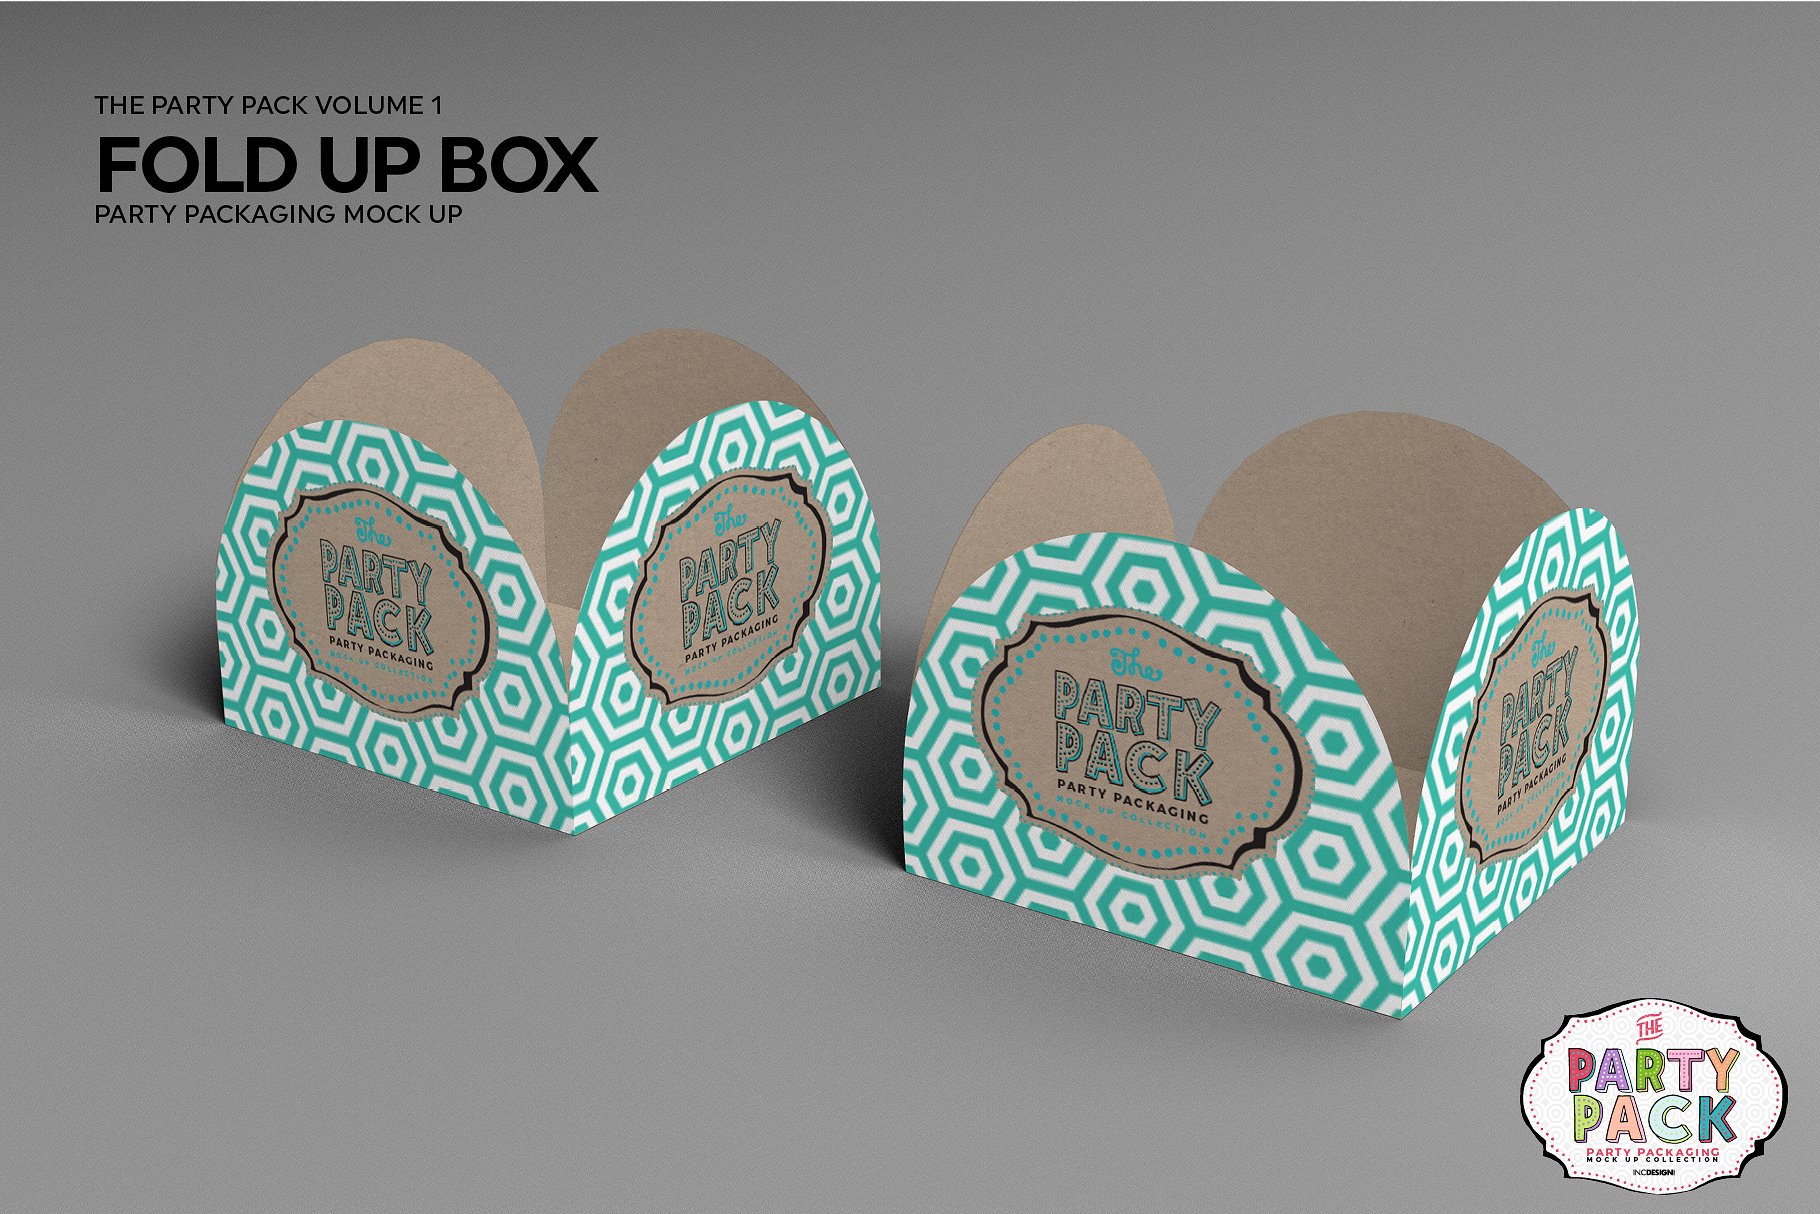 折叠盒包装展示样机 Fold Up Box Packaging Mockup [psd]插图(3)